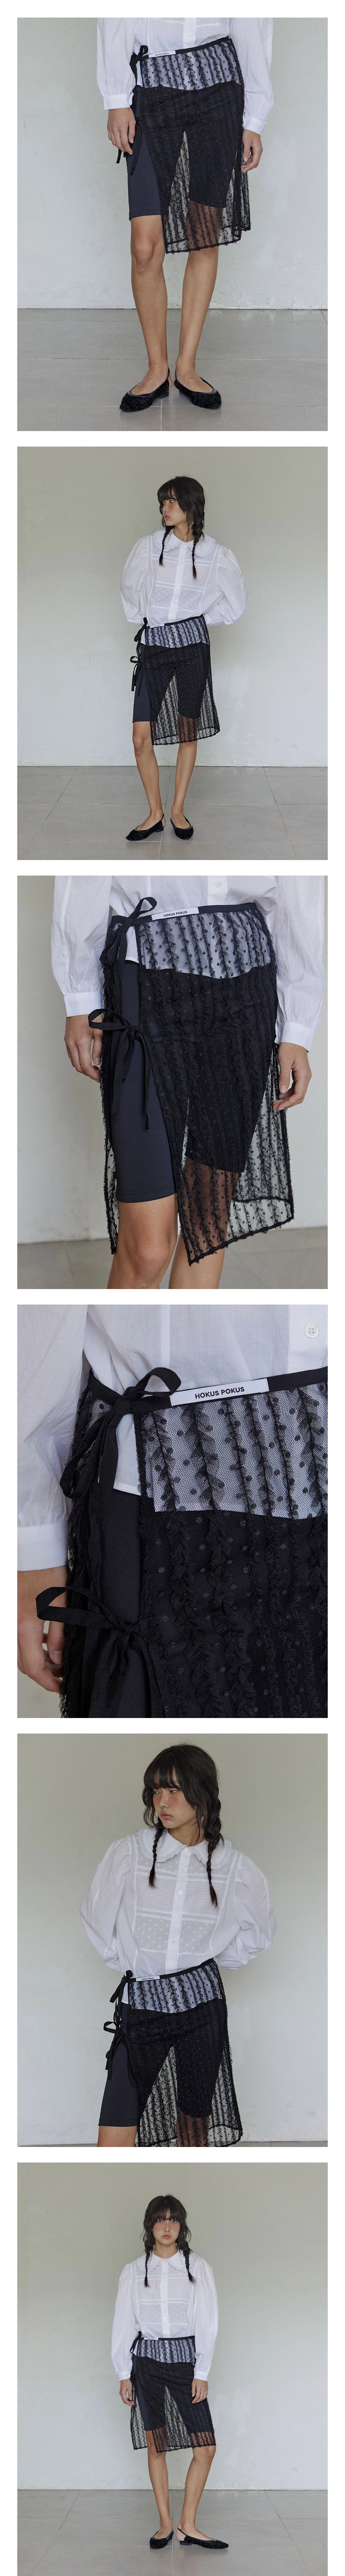 Lace layered skirt / Black